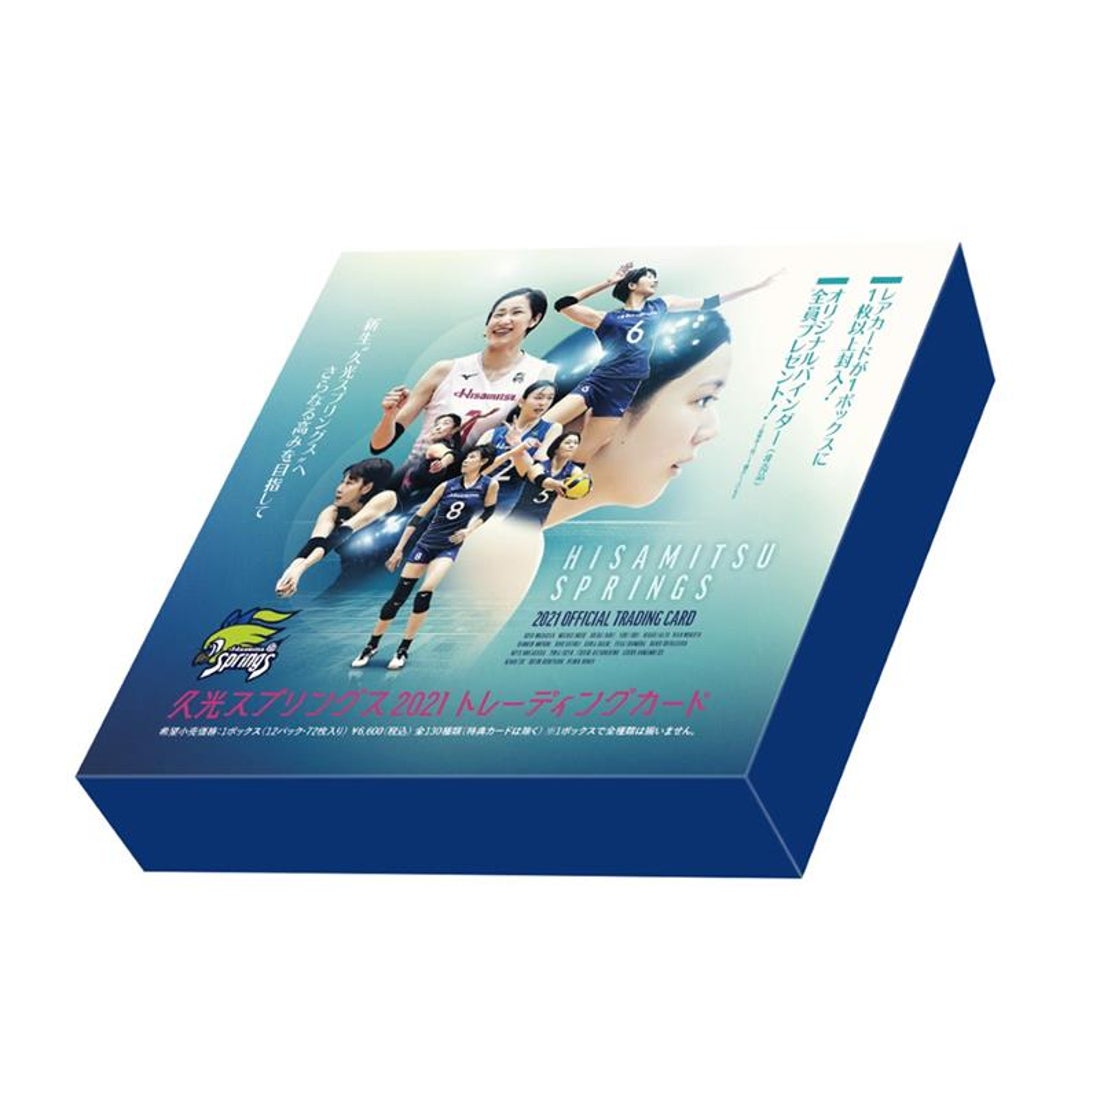 「久光スプリングス 2021」トレーディングカードBOX